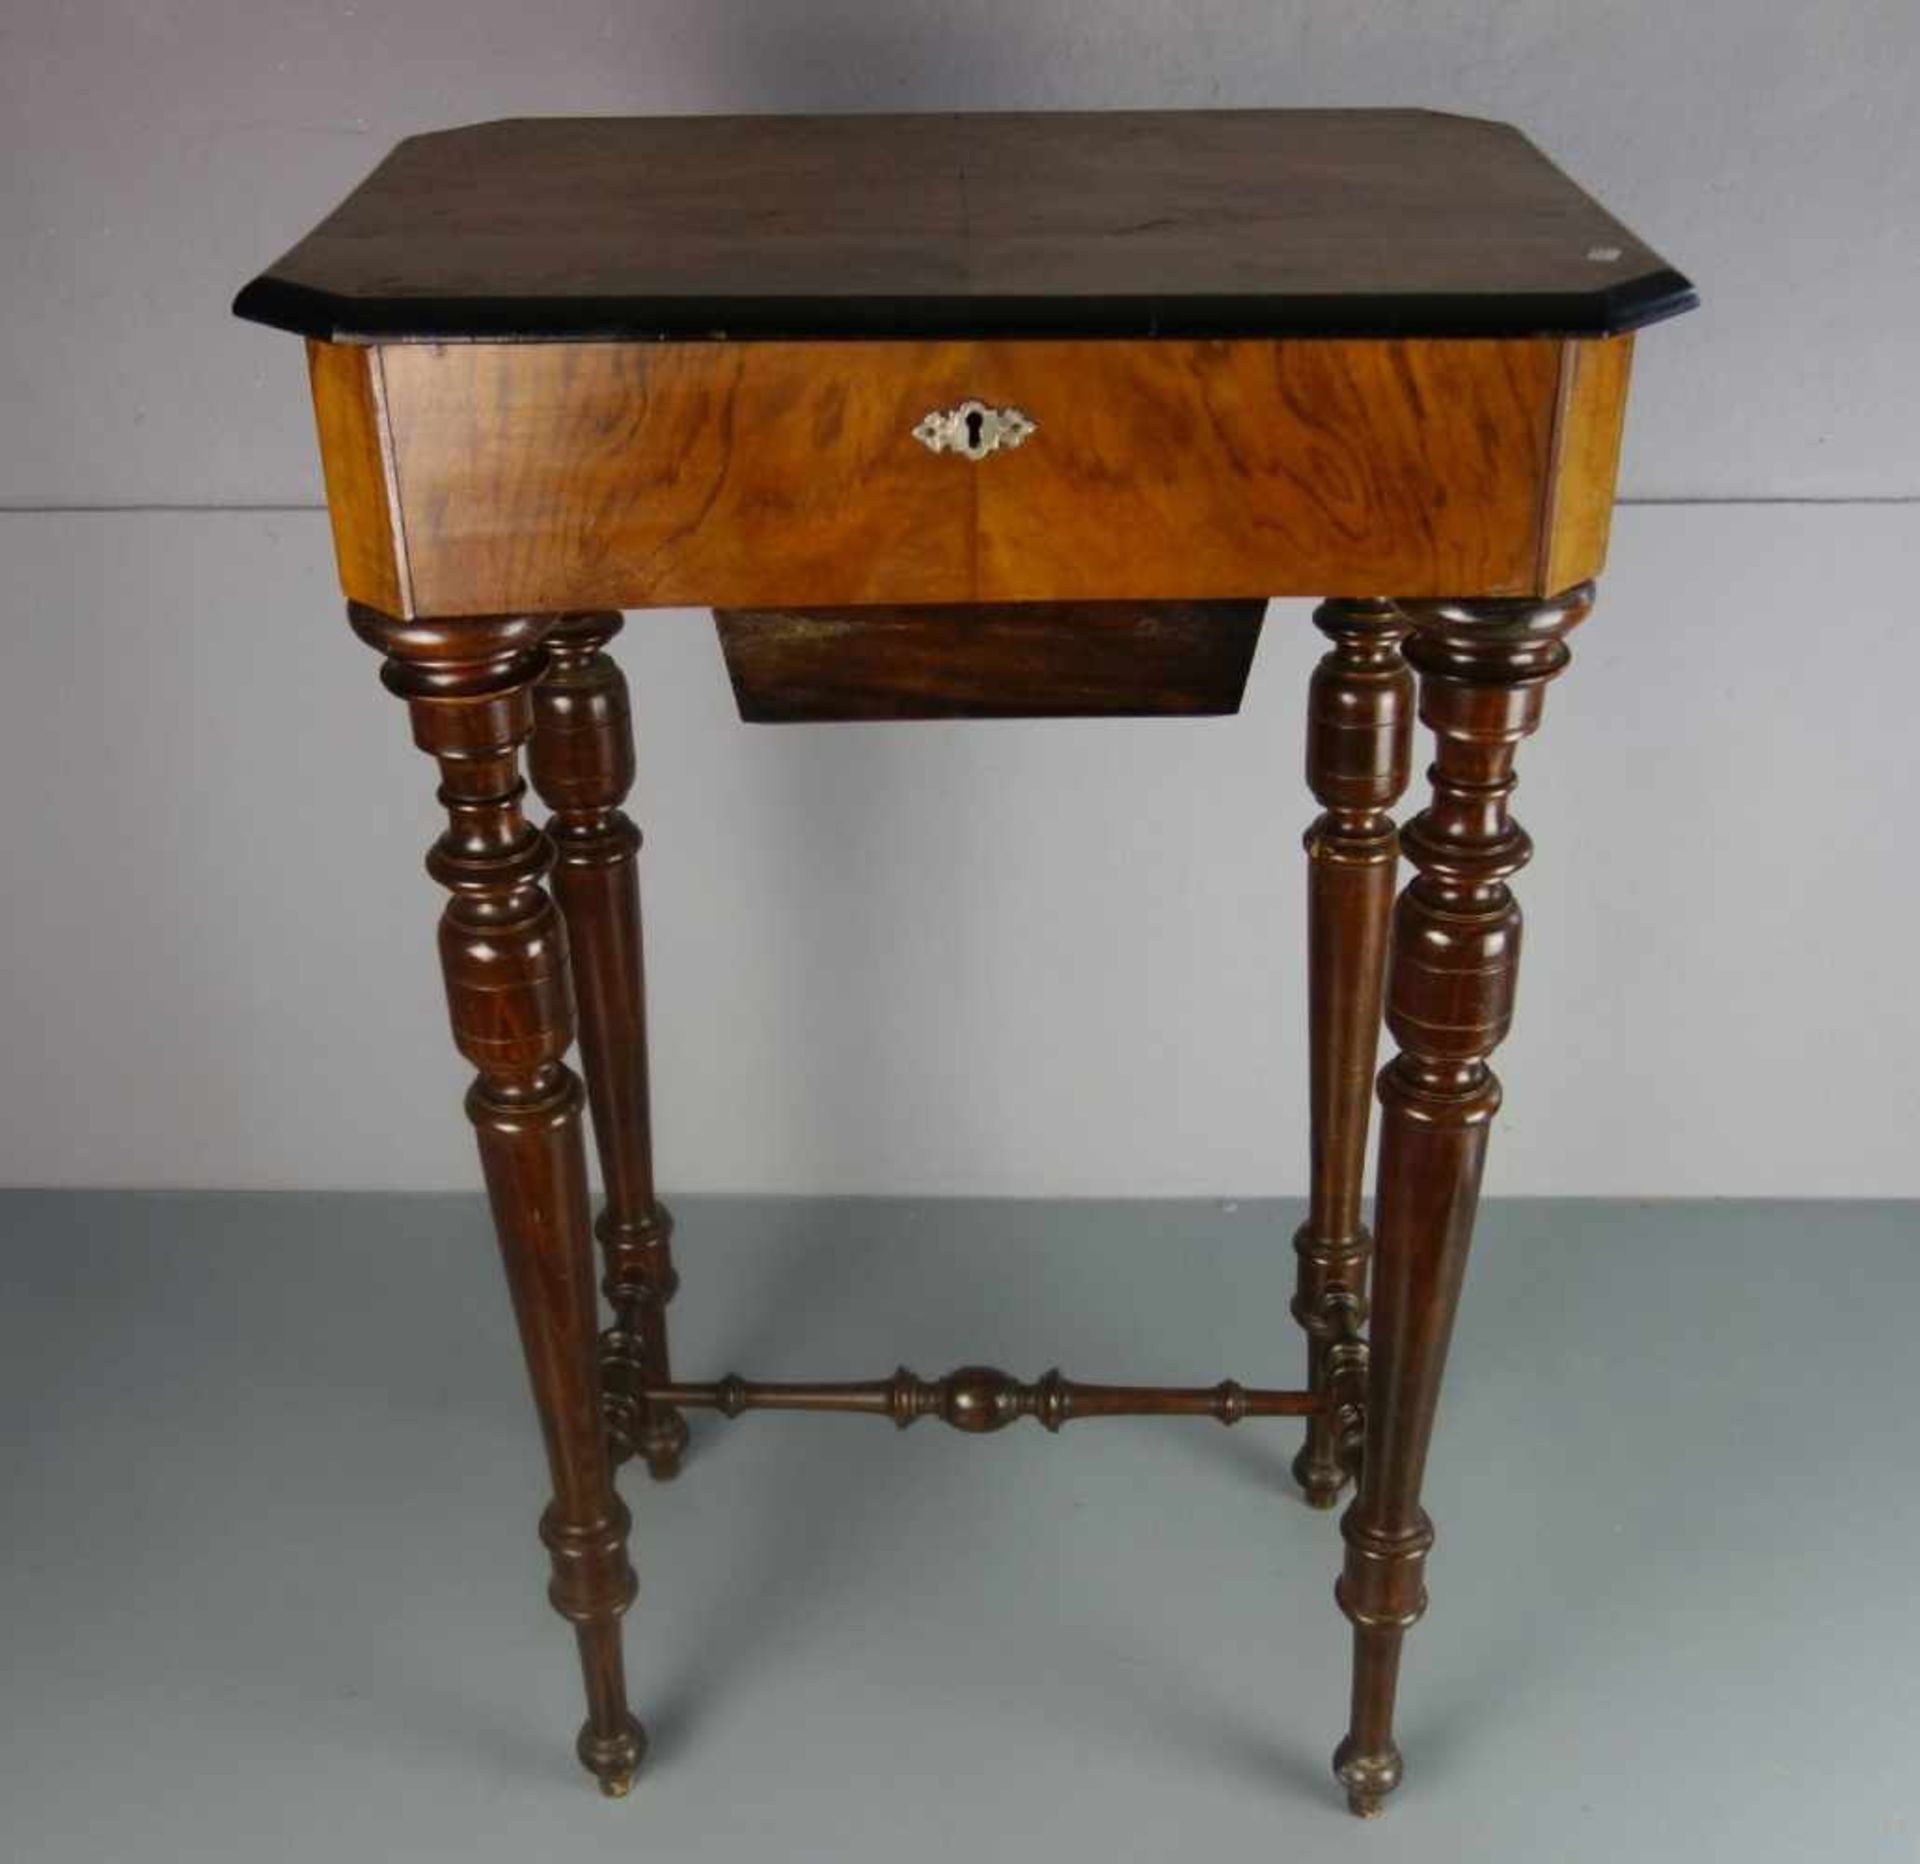 NÄHTISCH / sewing table, um 1900. Dunkel lasierte Buche, Nussbaumfurnier und ebonisierte Partien.